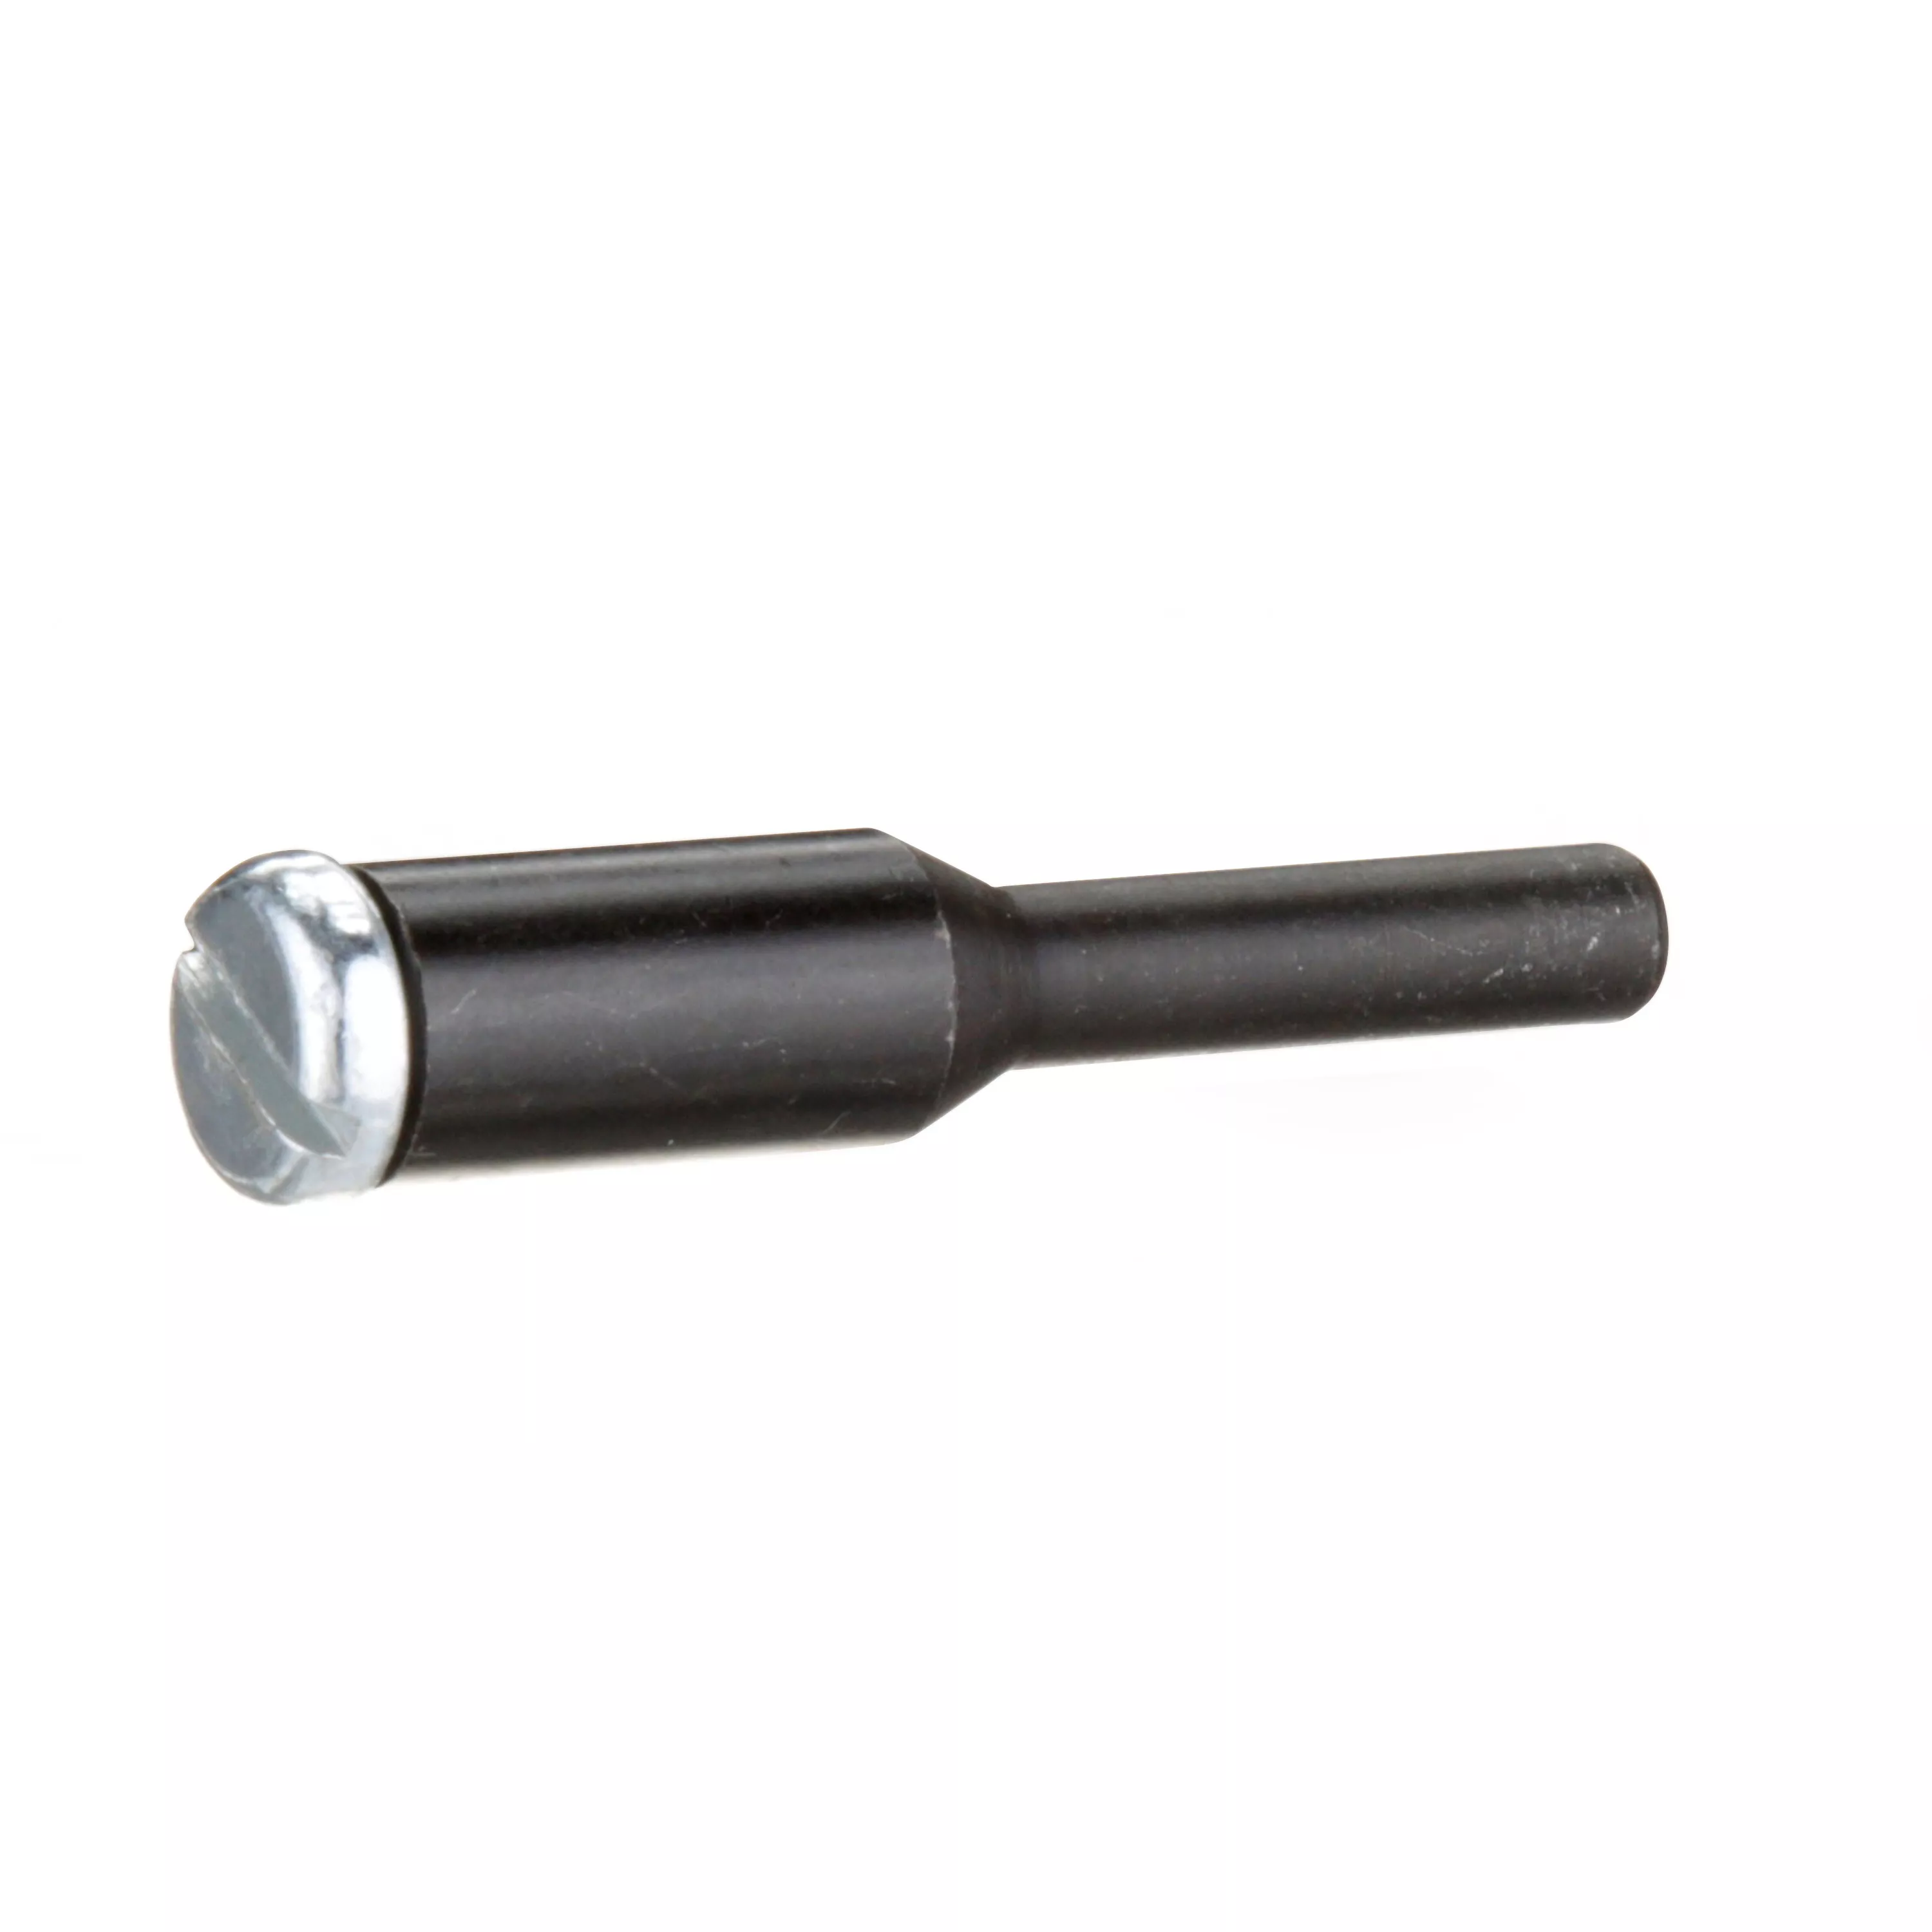 Standard Abrasives™ Mandrel, 713286, 1/4 in x 1/4 in x 2 in DM-7, 5/Bag,
100 ea/Case